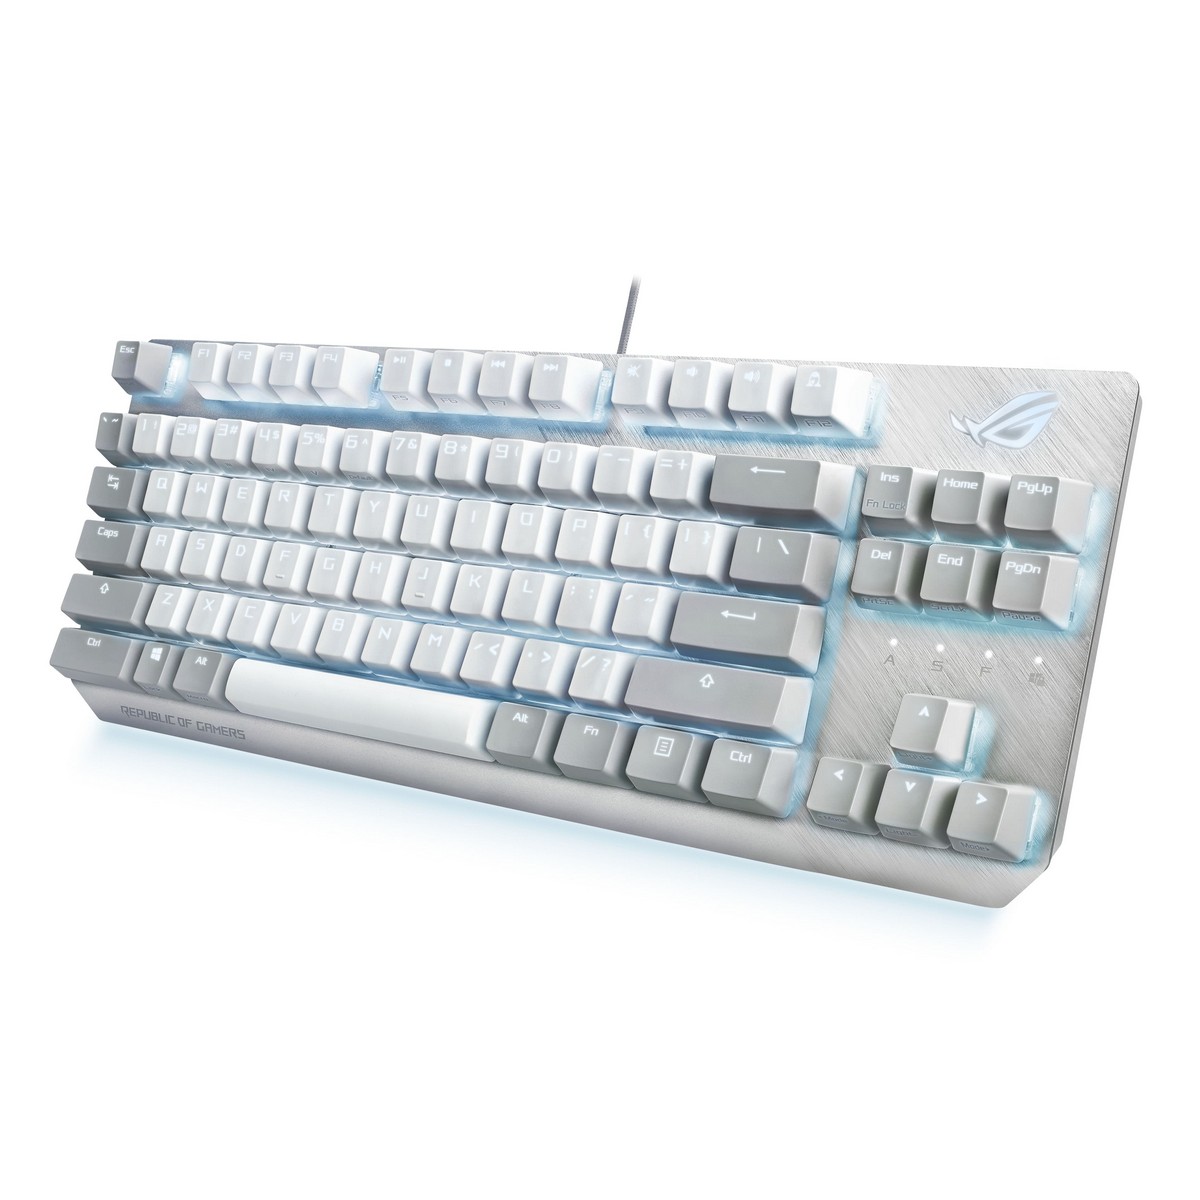 ASUS ROG Strix Scope TKL Moonlight White Gaming Keyboard